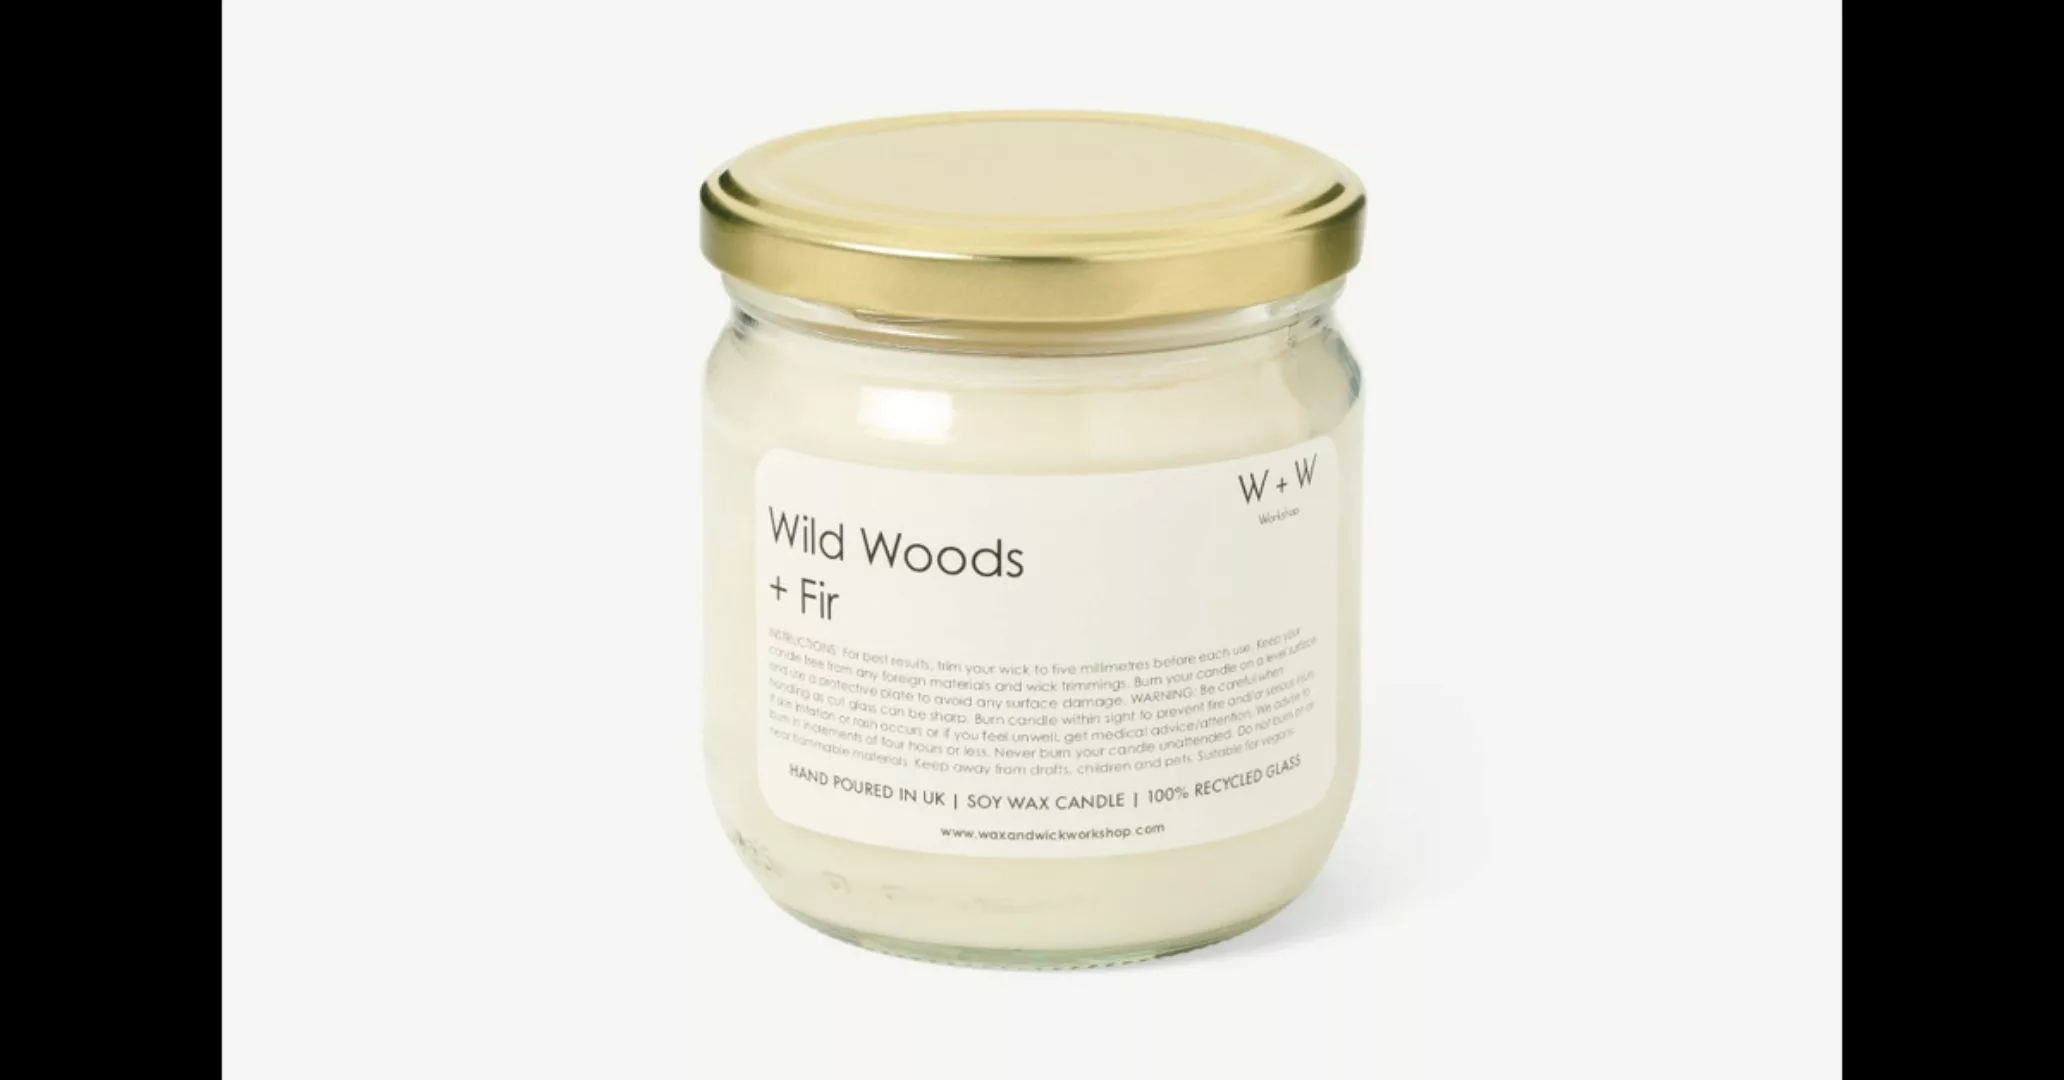 Wax + Wick Wild Woods & Fir Kerze - MADE.com günstig online kaufen